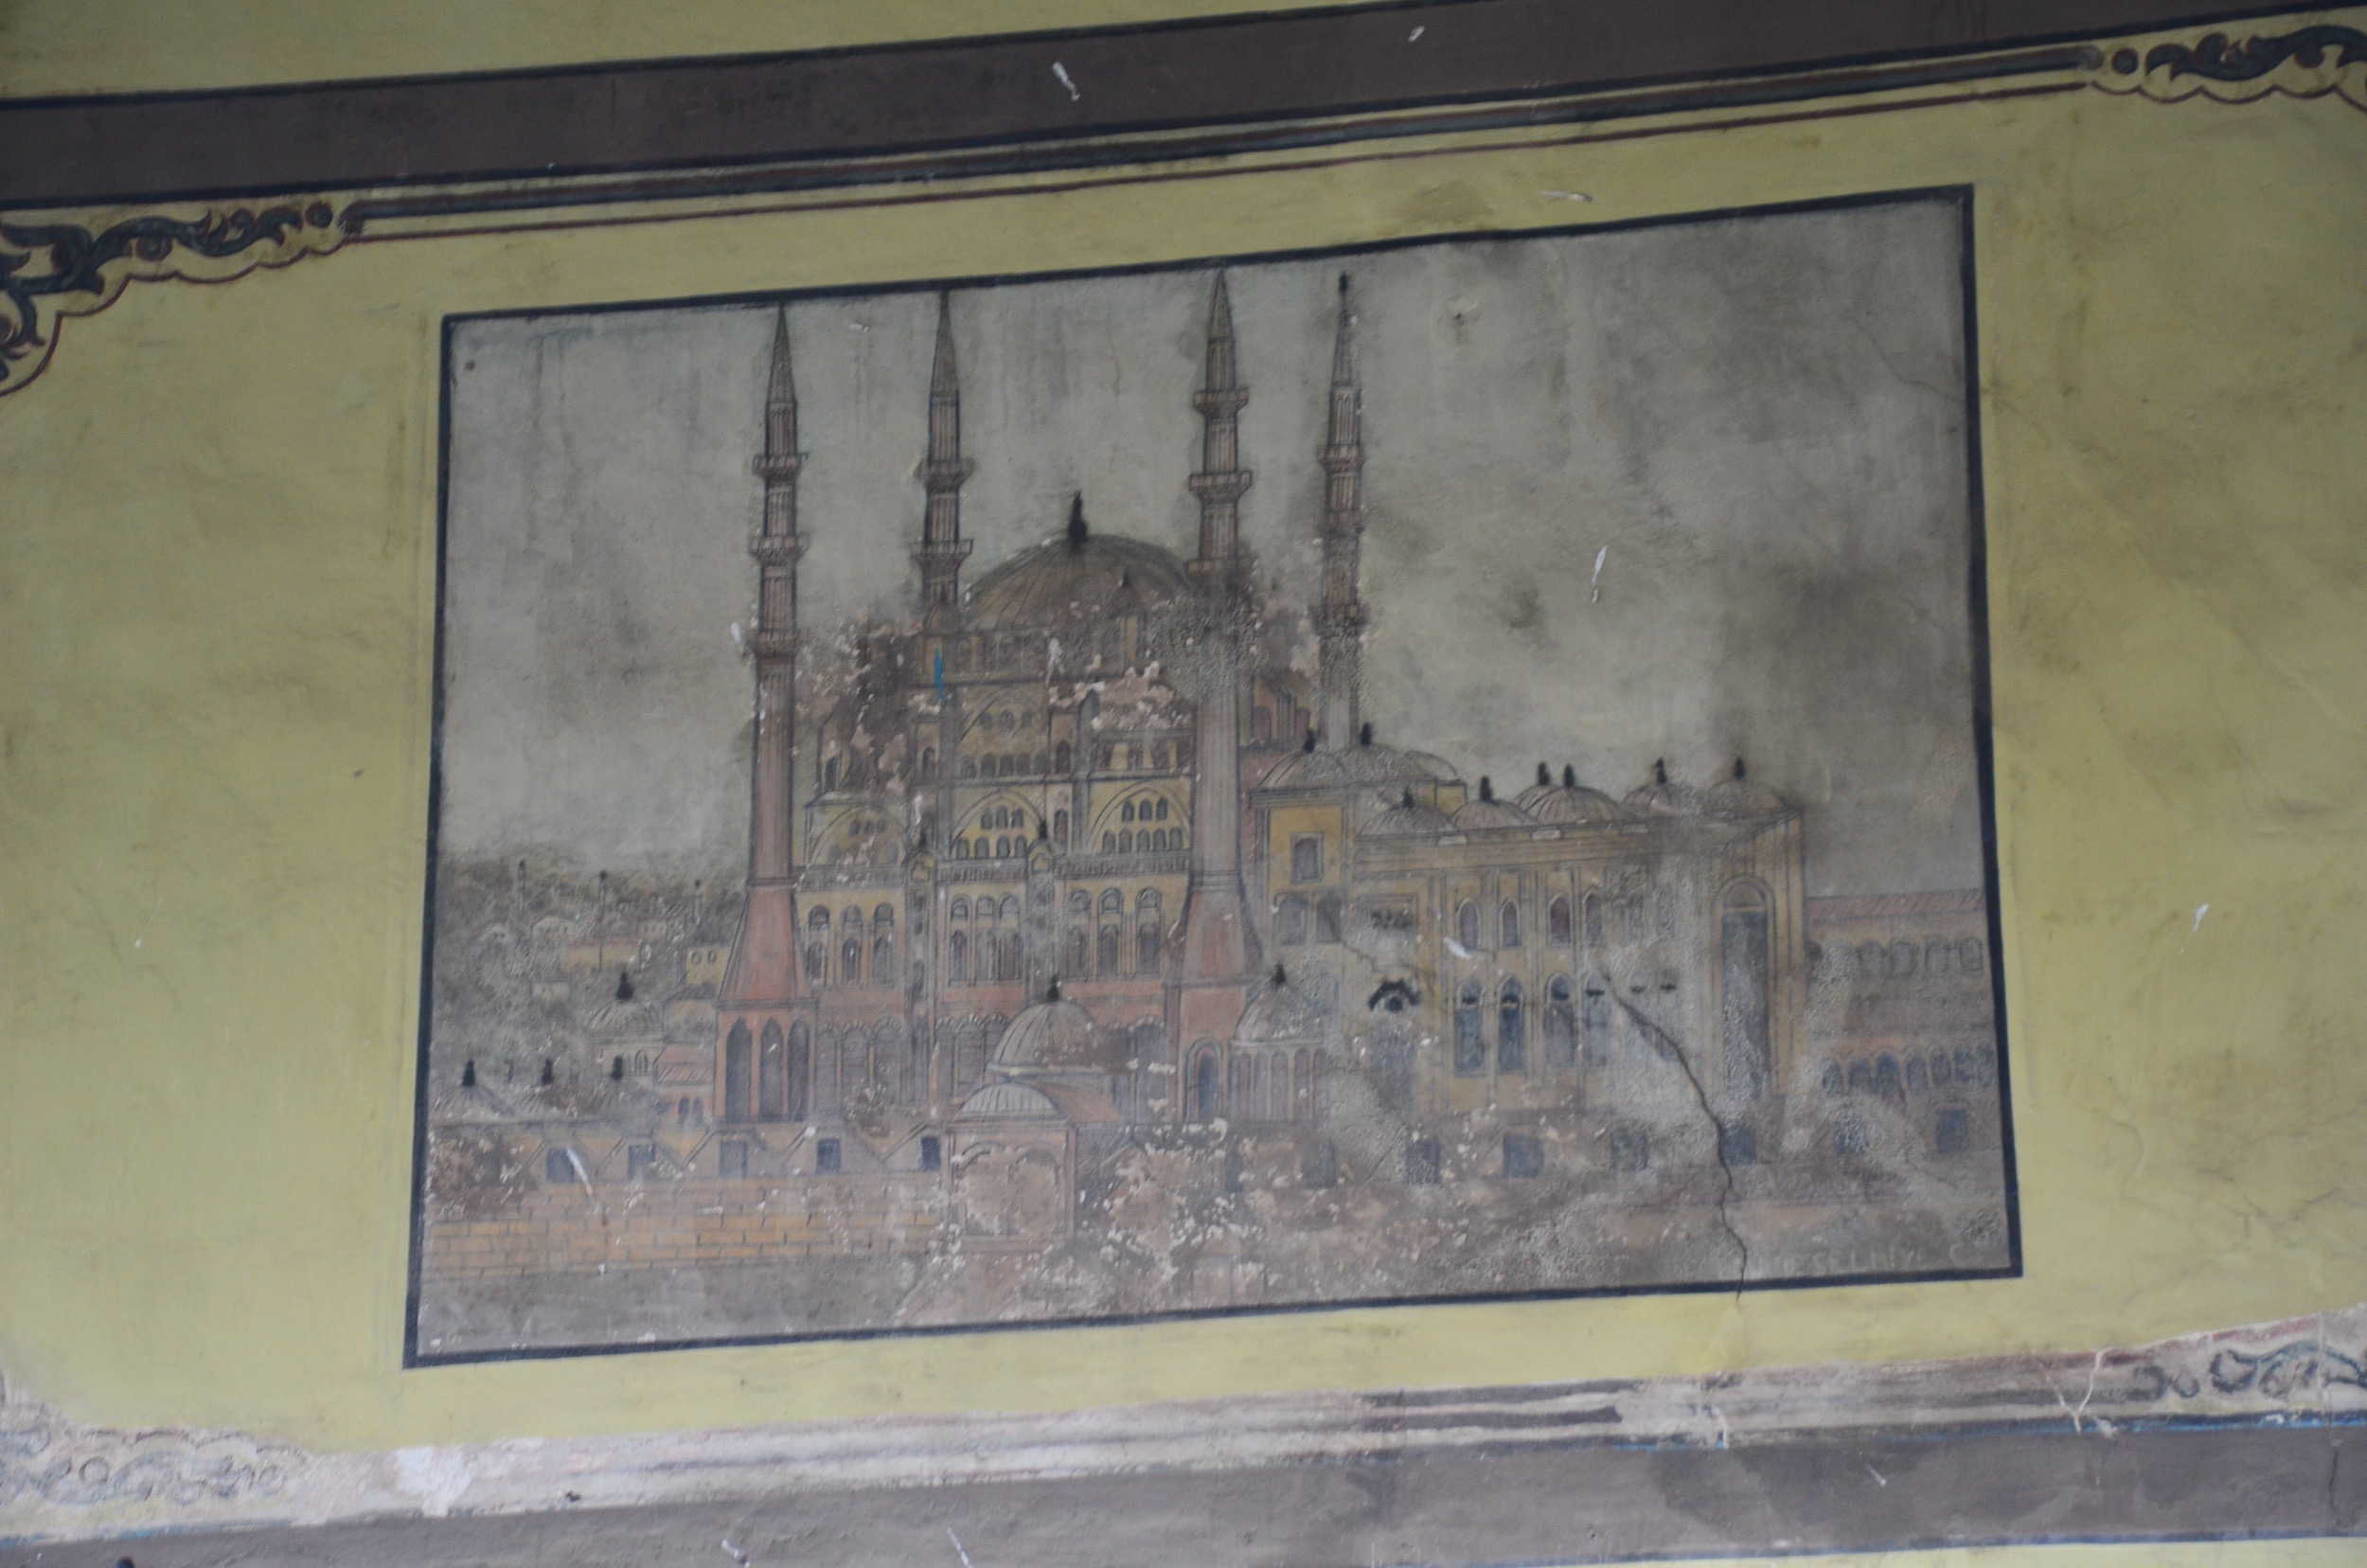 Fresco of the Selimiye Mosque on the Cumalıkızık Mosque in Cumalıkızık, Bursa, Turkey